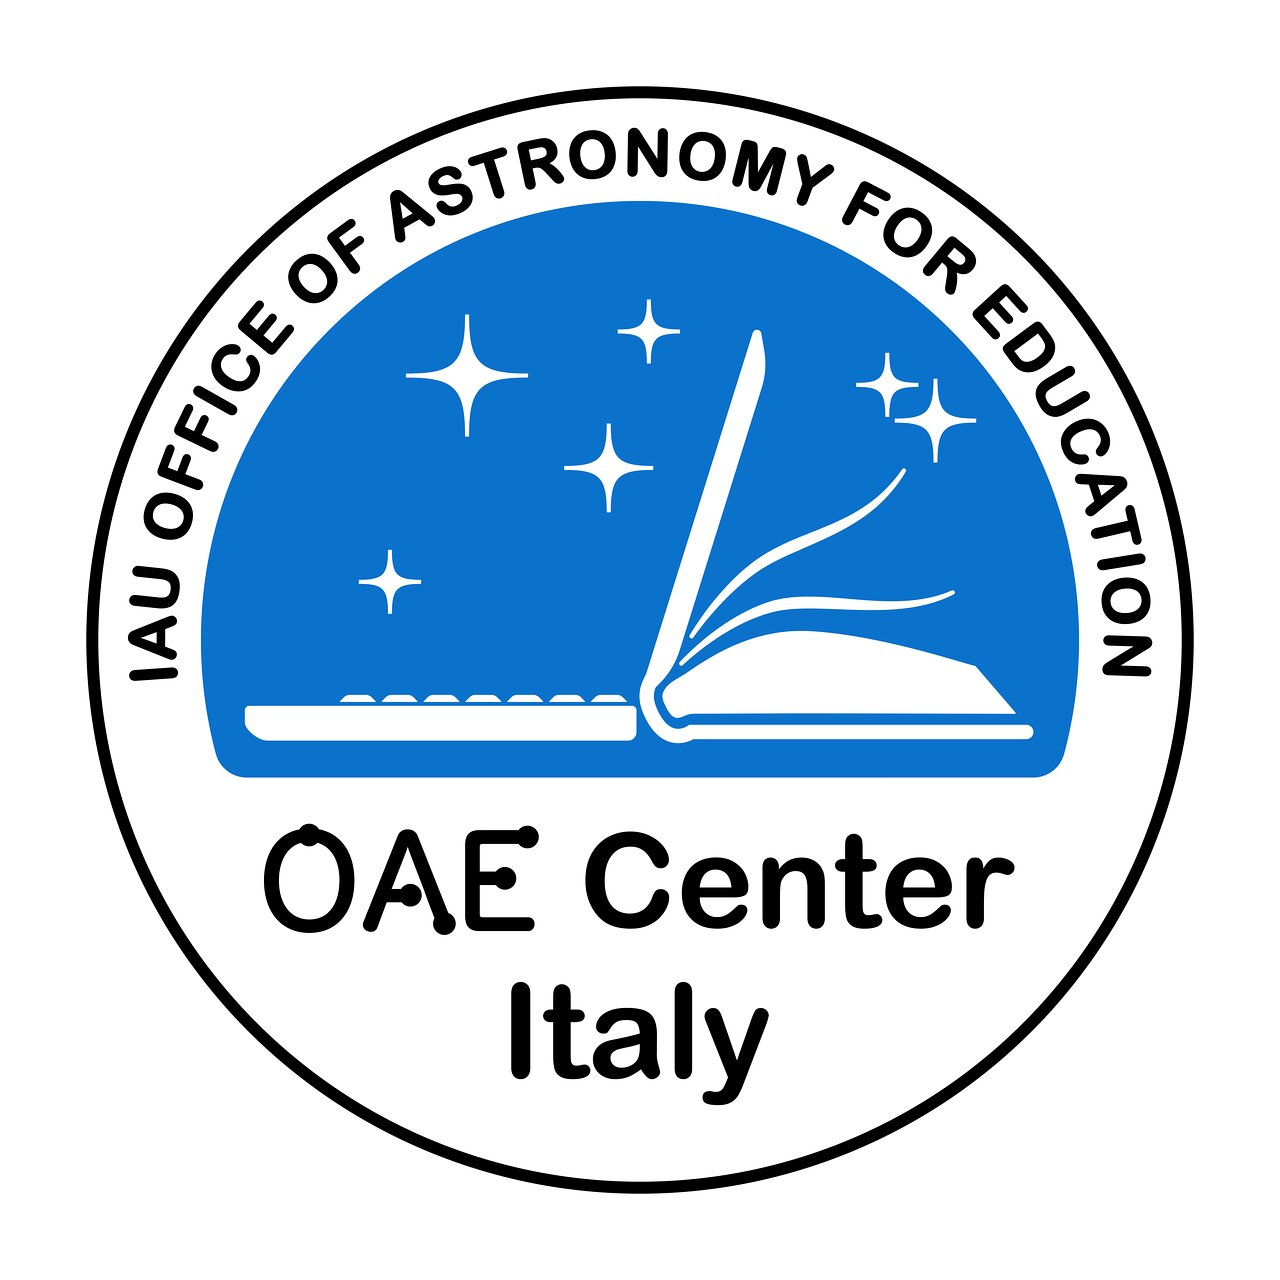 IAU OAE Center Italy logo